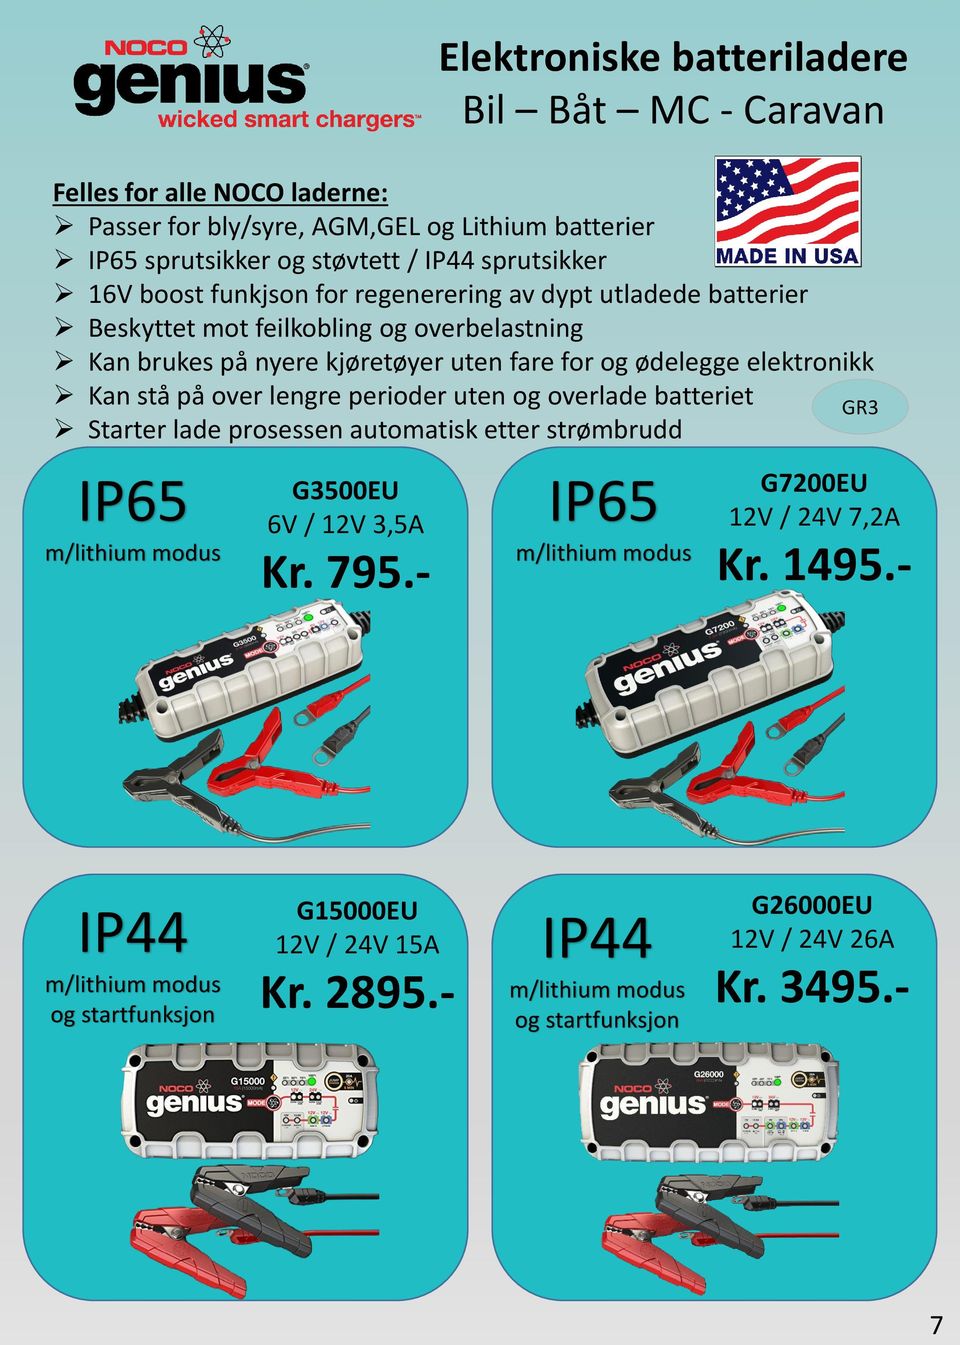 på over lengre perioder uten og overlade batteriet Starter lade prosessen automatisk etter strømbrudd IP65 m/lithium modus G3500EU 6V / 12V 3,5A Kr. 795.